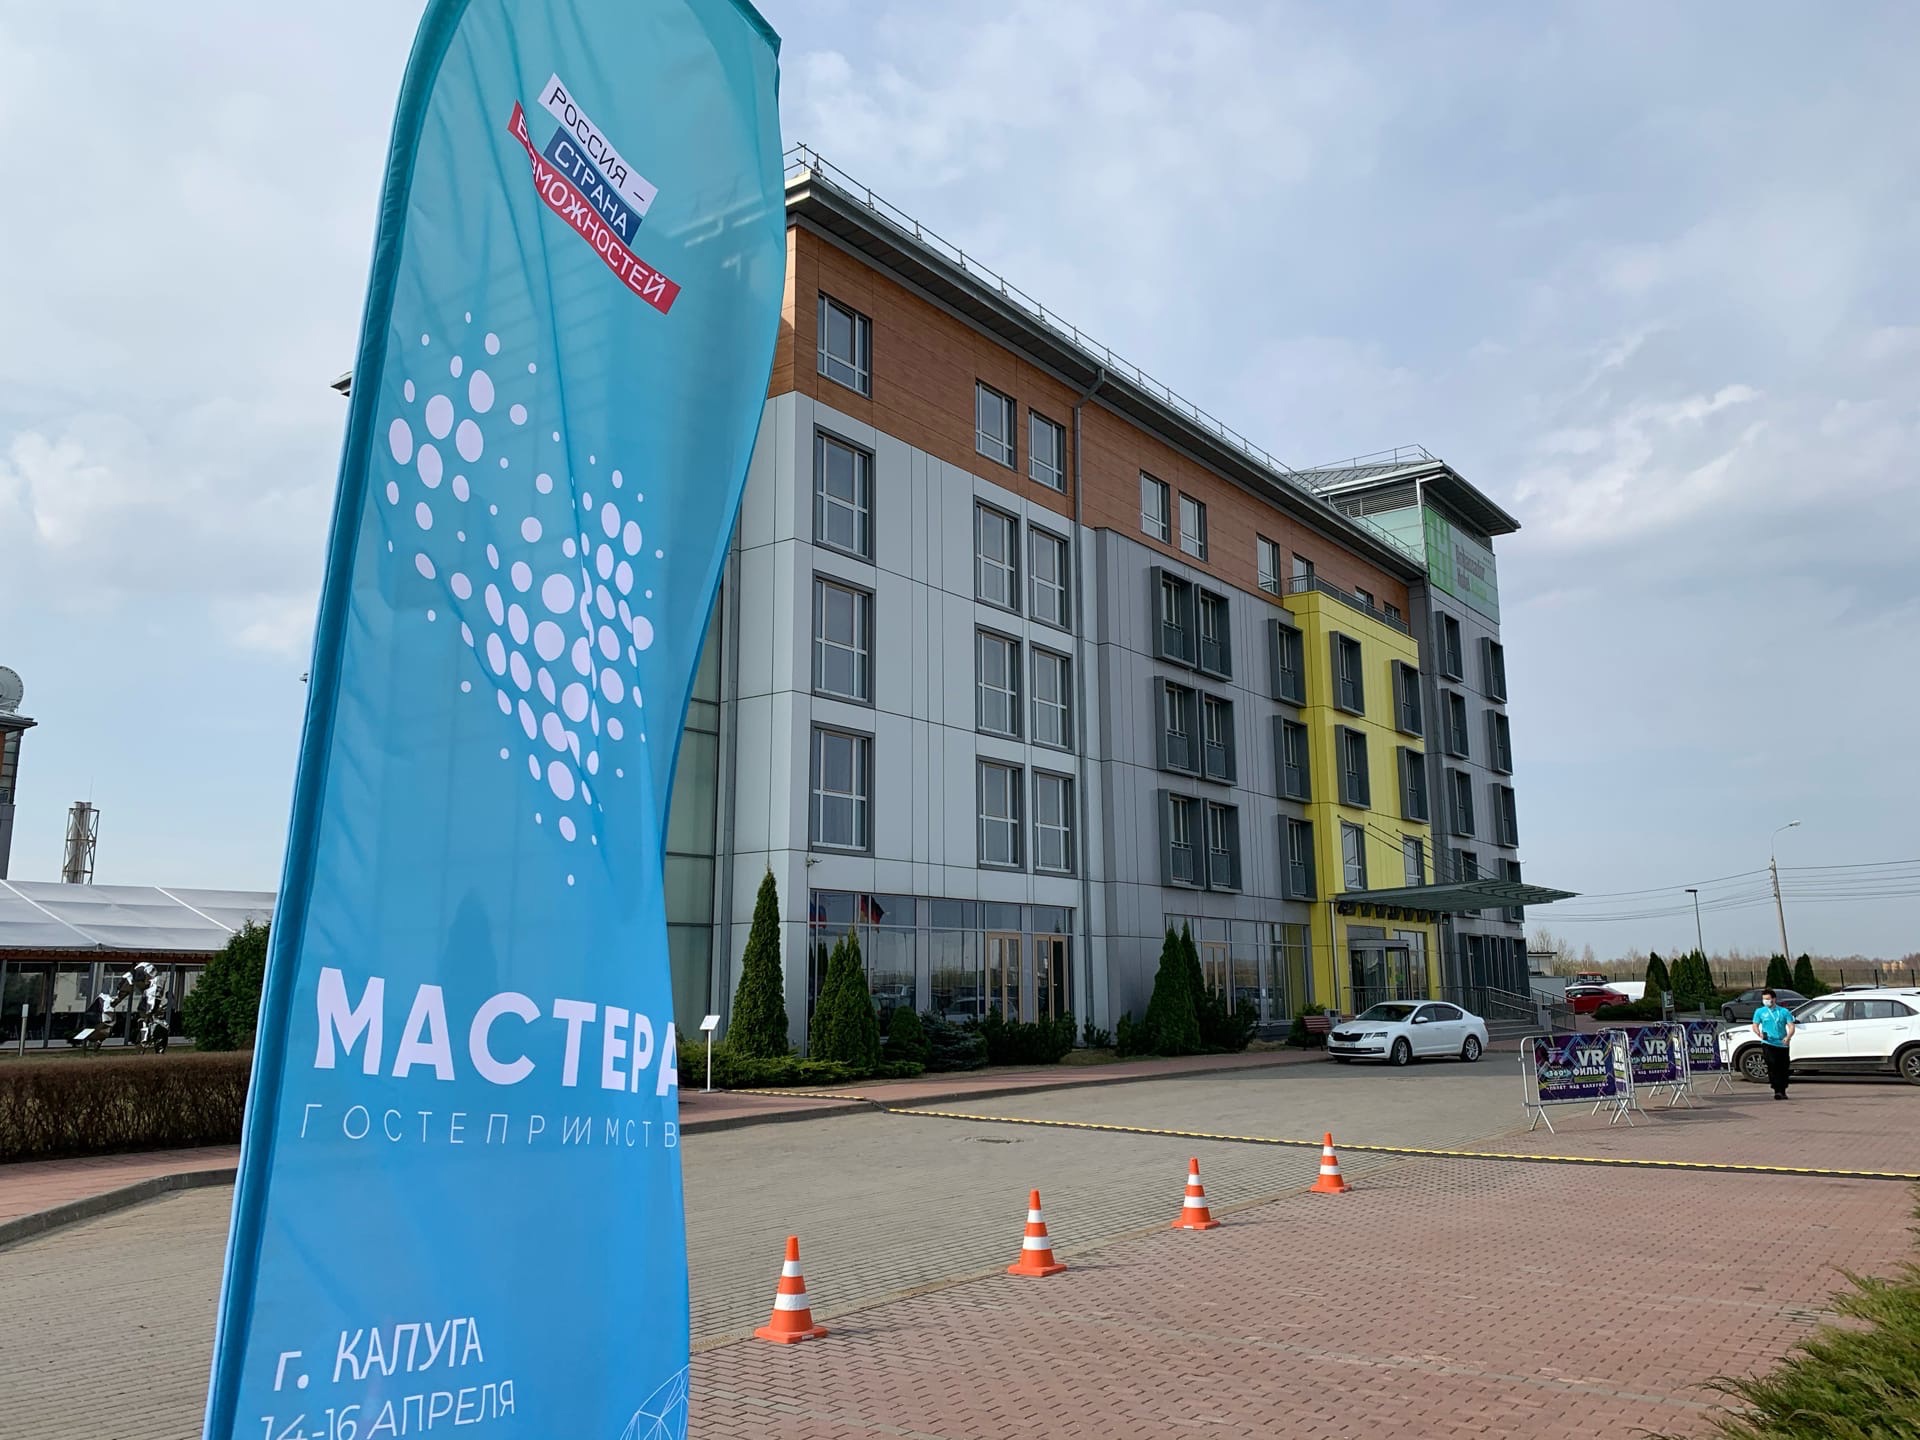 
		
		Пензенские полуфиналисты «Мастеров гостеприимства» в Калуге рассказали о проектах
		
	